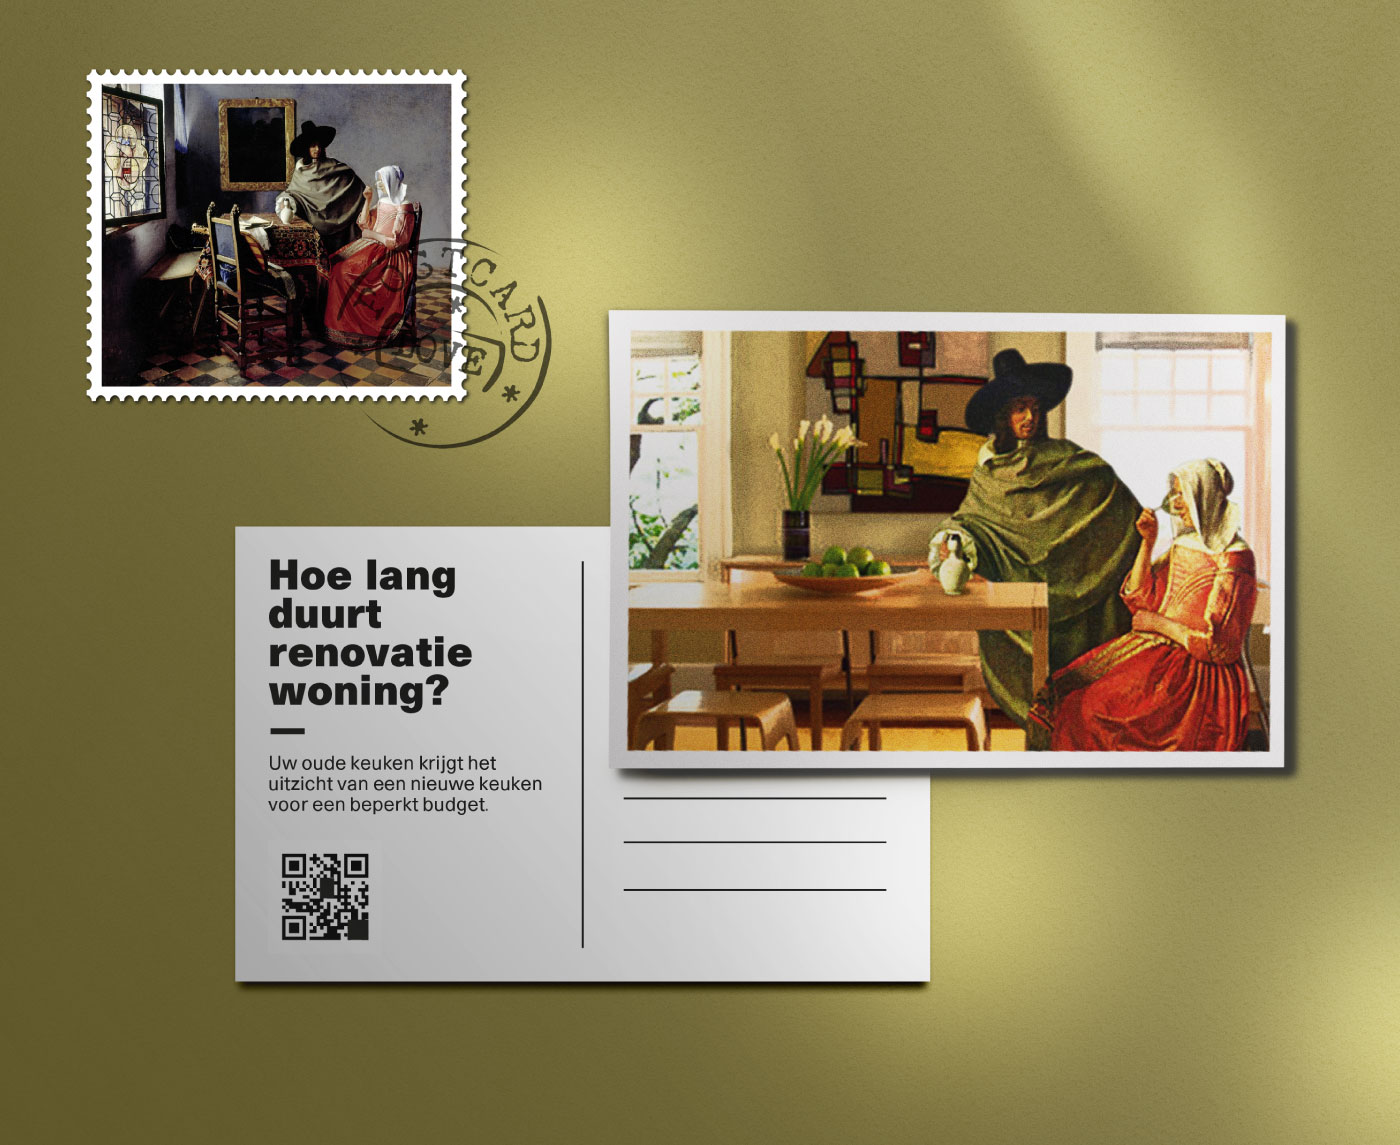 Postal free para una empresa holandesa de reformas de interiores reconstruyendo cuadros del pintor holandés Vermeer